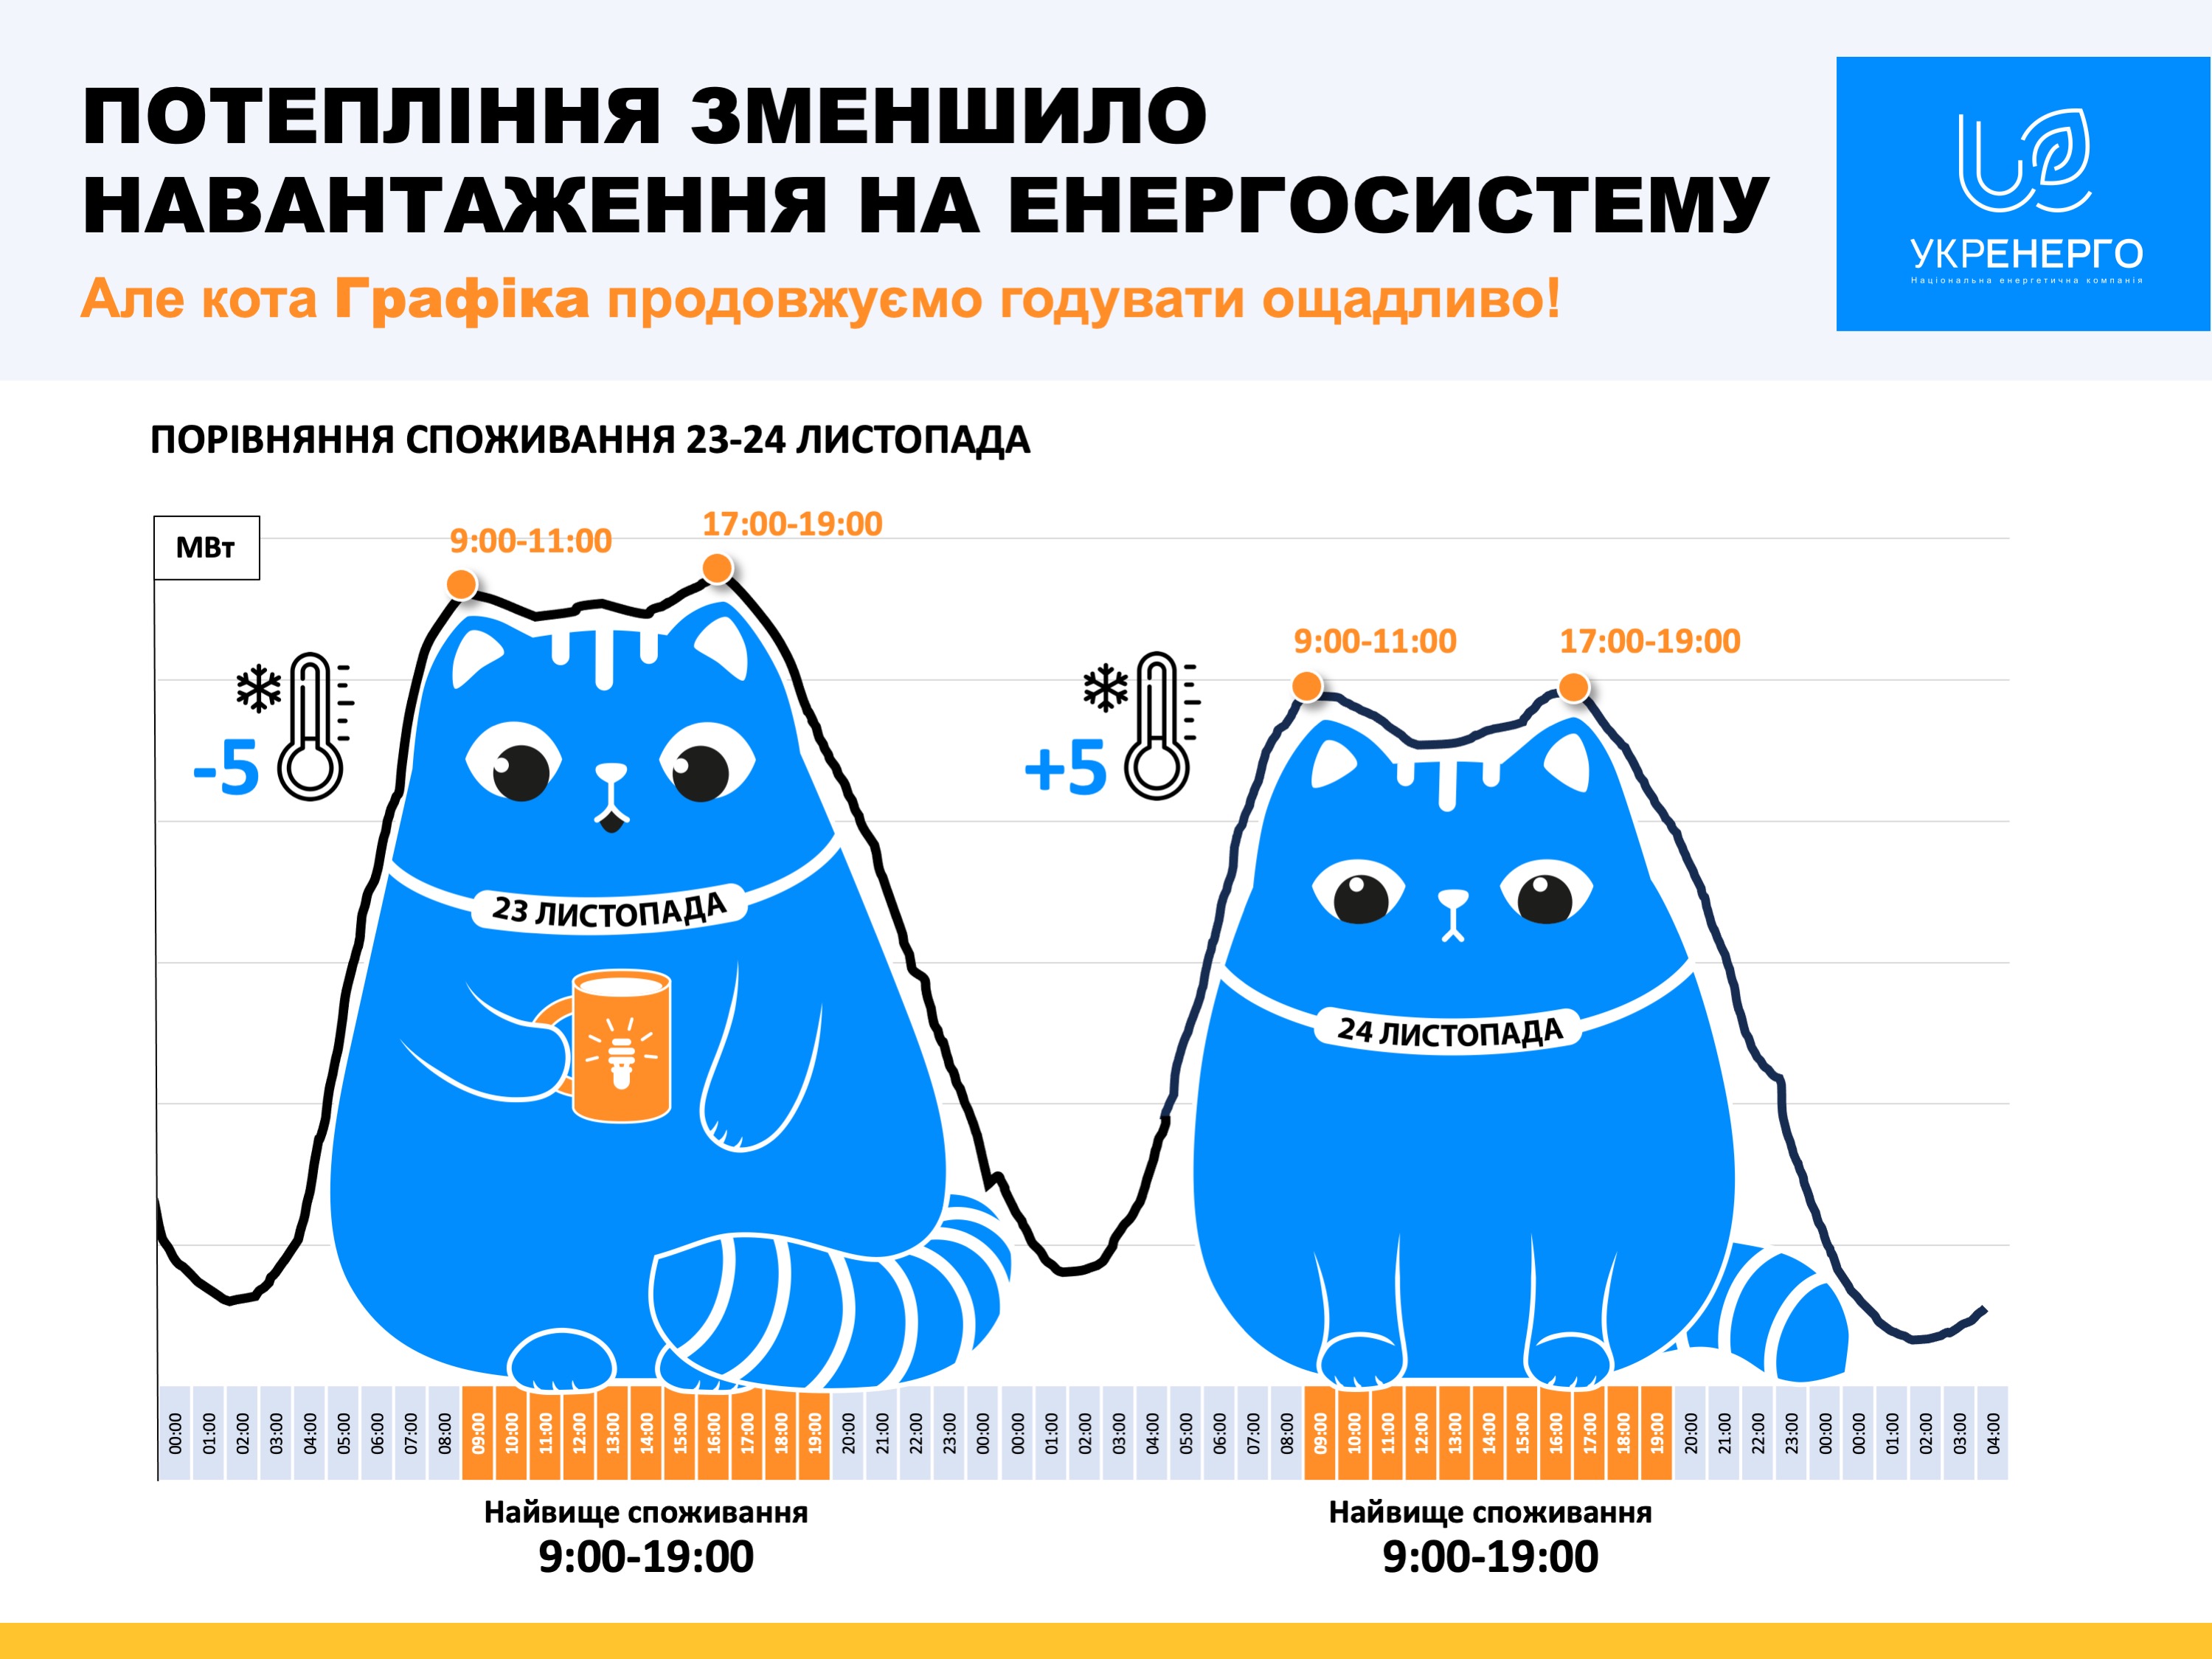 В Укрэнерго сообщили, как уменьшить коммунальный платеж за электроэнергию 